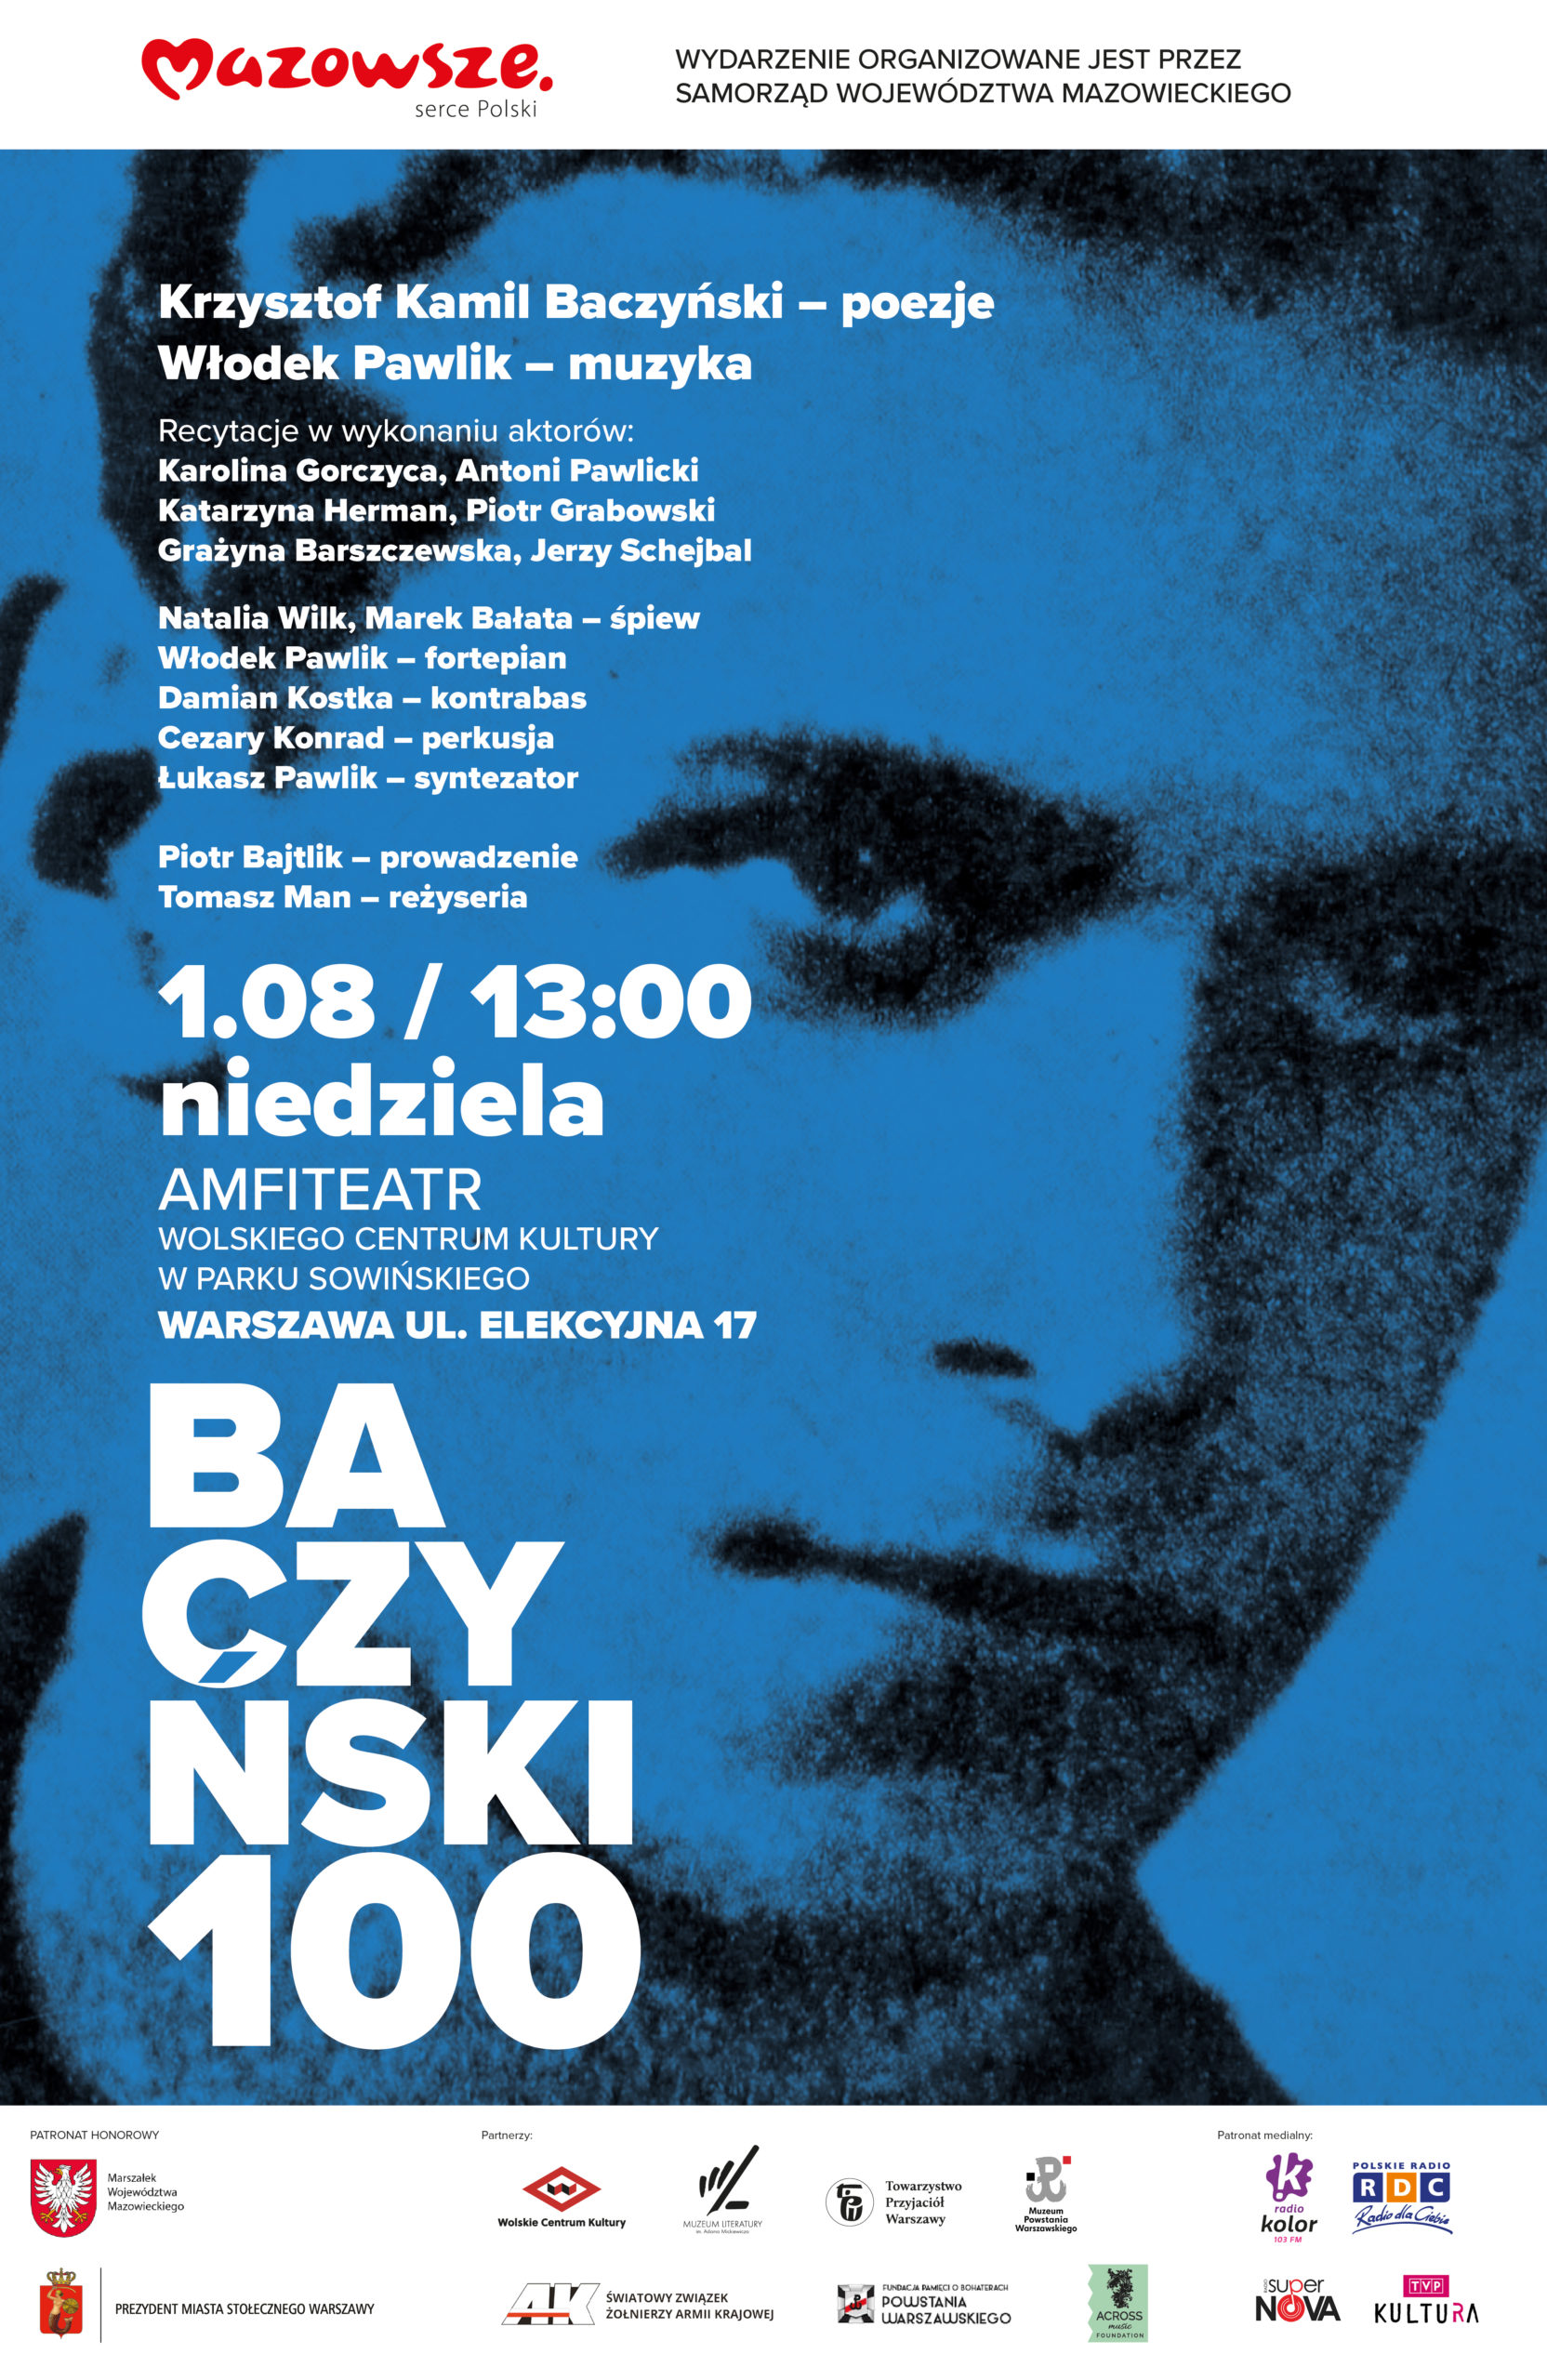 Plakat reklamujący koncert z okazji 100 lecia urodzin Krzysztofa Kamila Baczyńskiego, poety czasu wojny i okupacji, odbywający się 1 sierpnia o godzinie 13:00 w Parku Sowińskiego. 